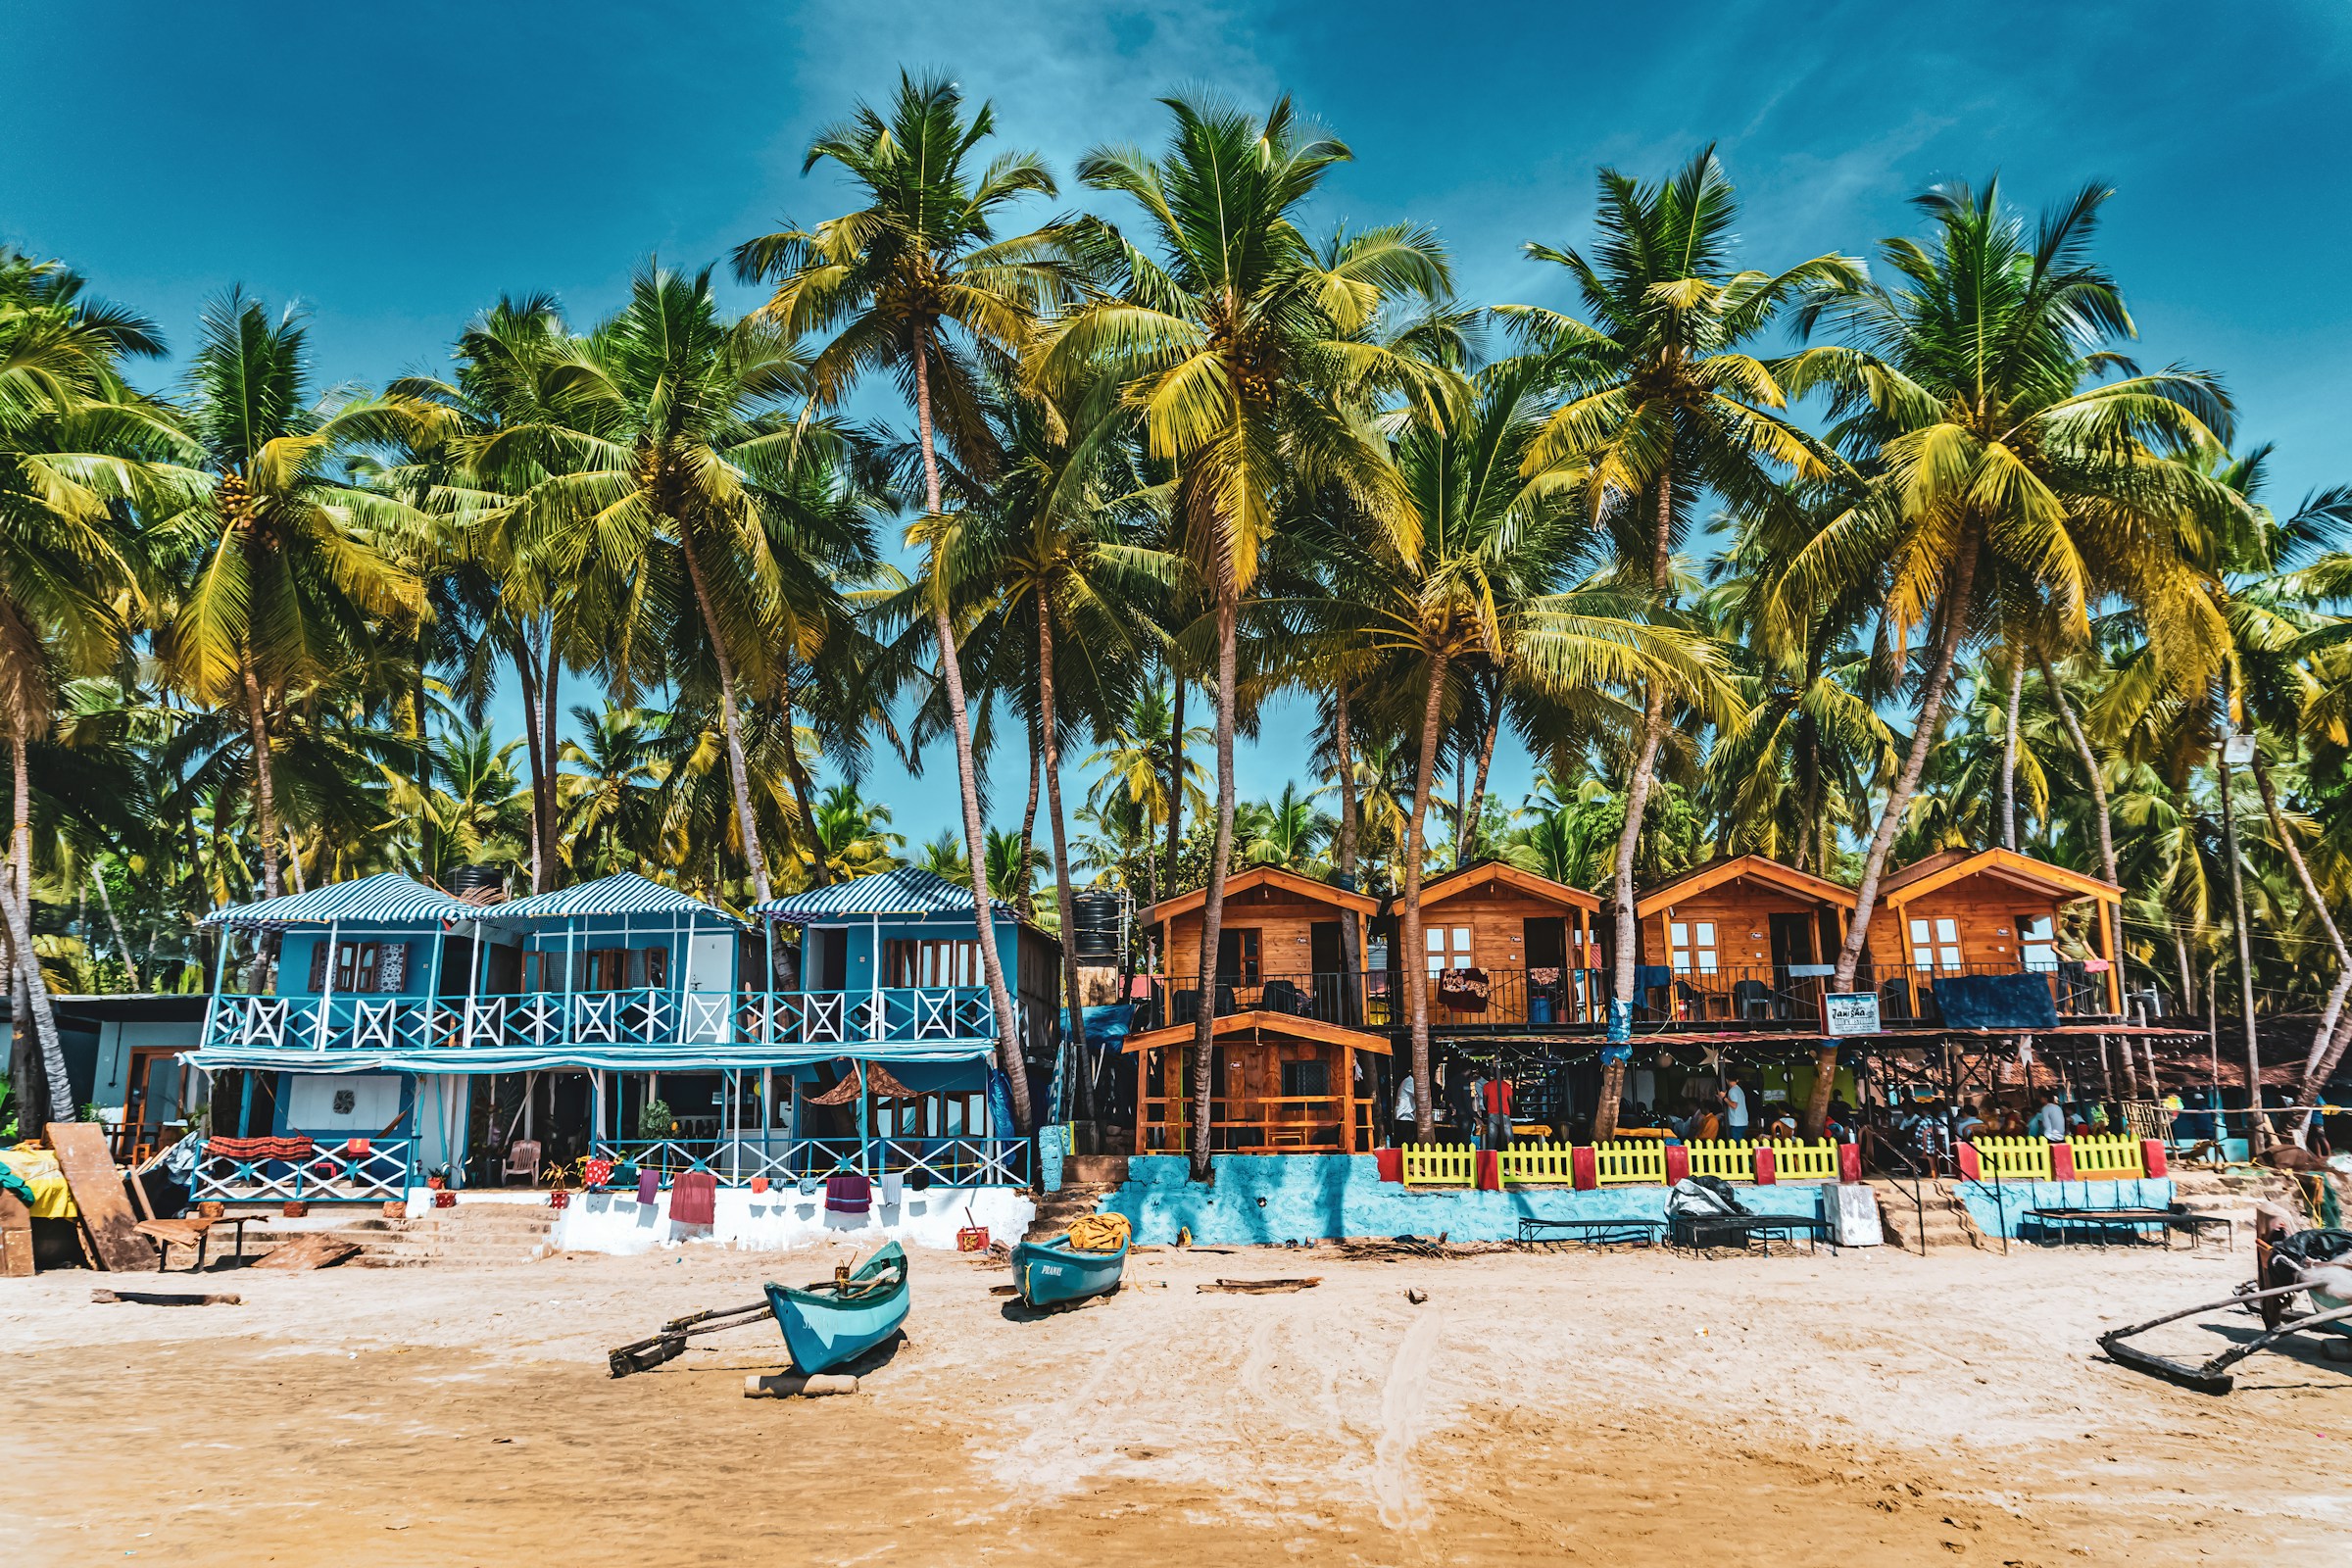 Färgglada strandhyddor omgivna av palmer på en tropisk strand i Goa.